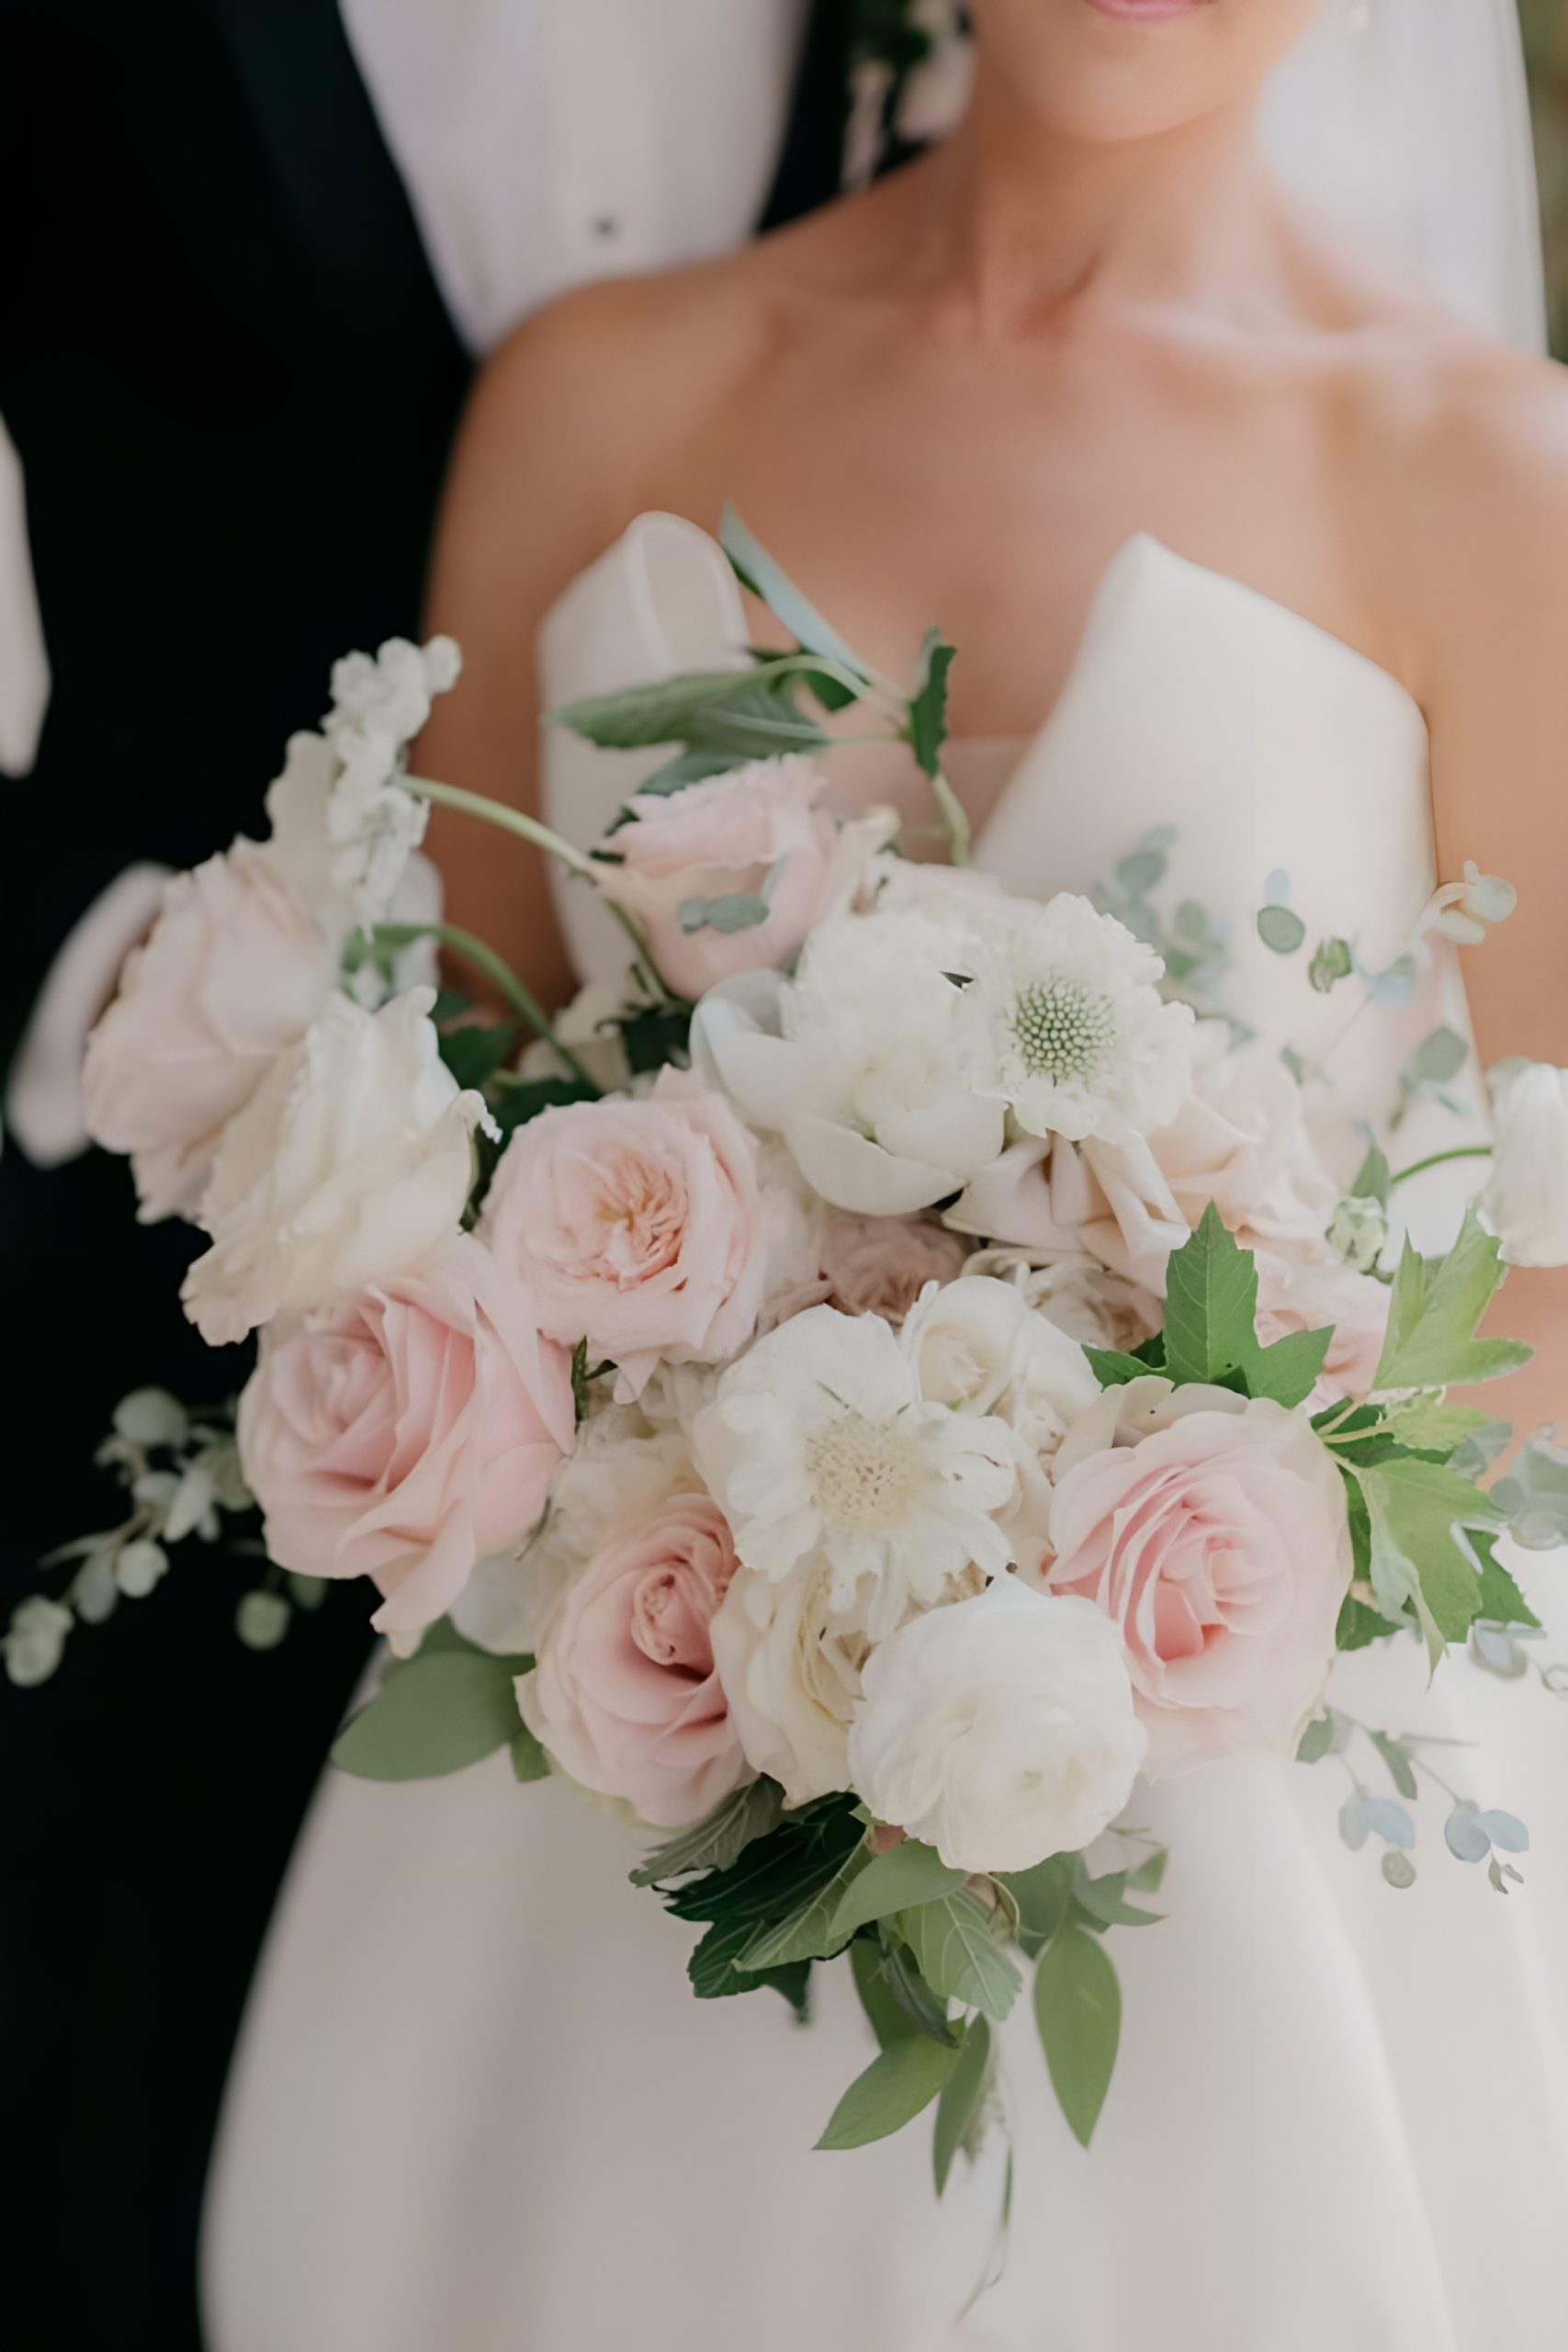 Blush Wedding Bouquets You'll Love